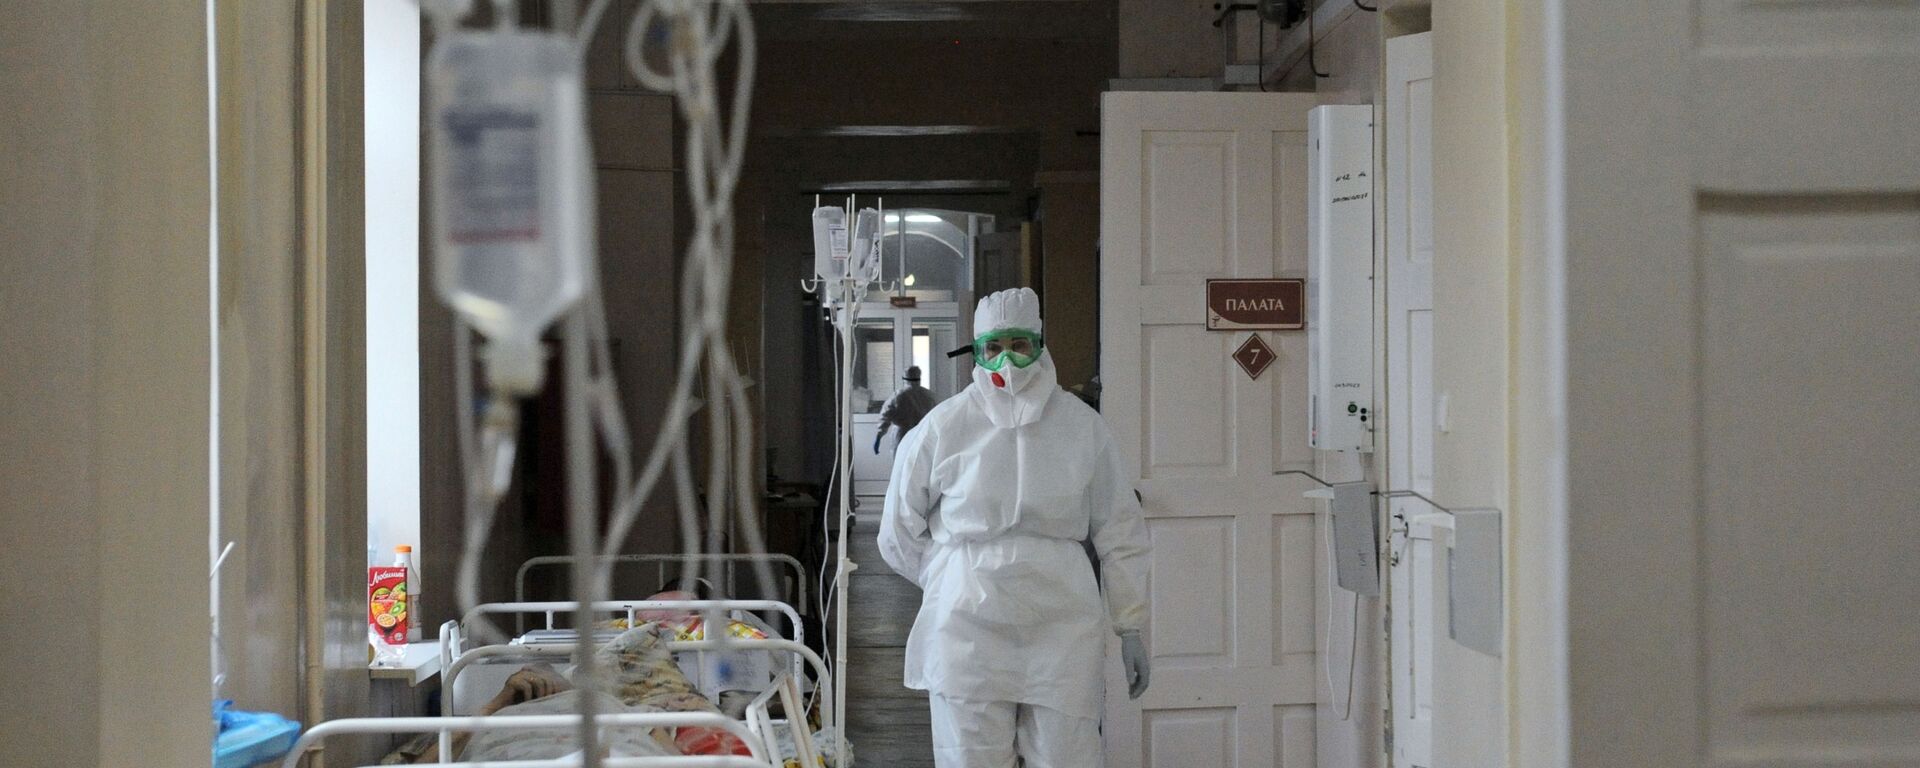 Медицинская сестра идет по больничному коридору. Архивное фото - Sputnik Кыргызстан, 1920, 31.10.2021